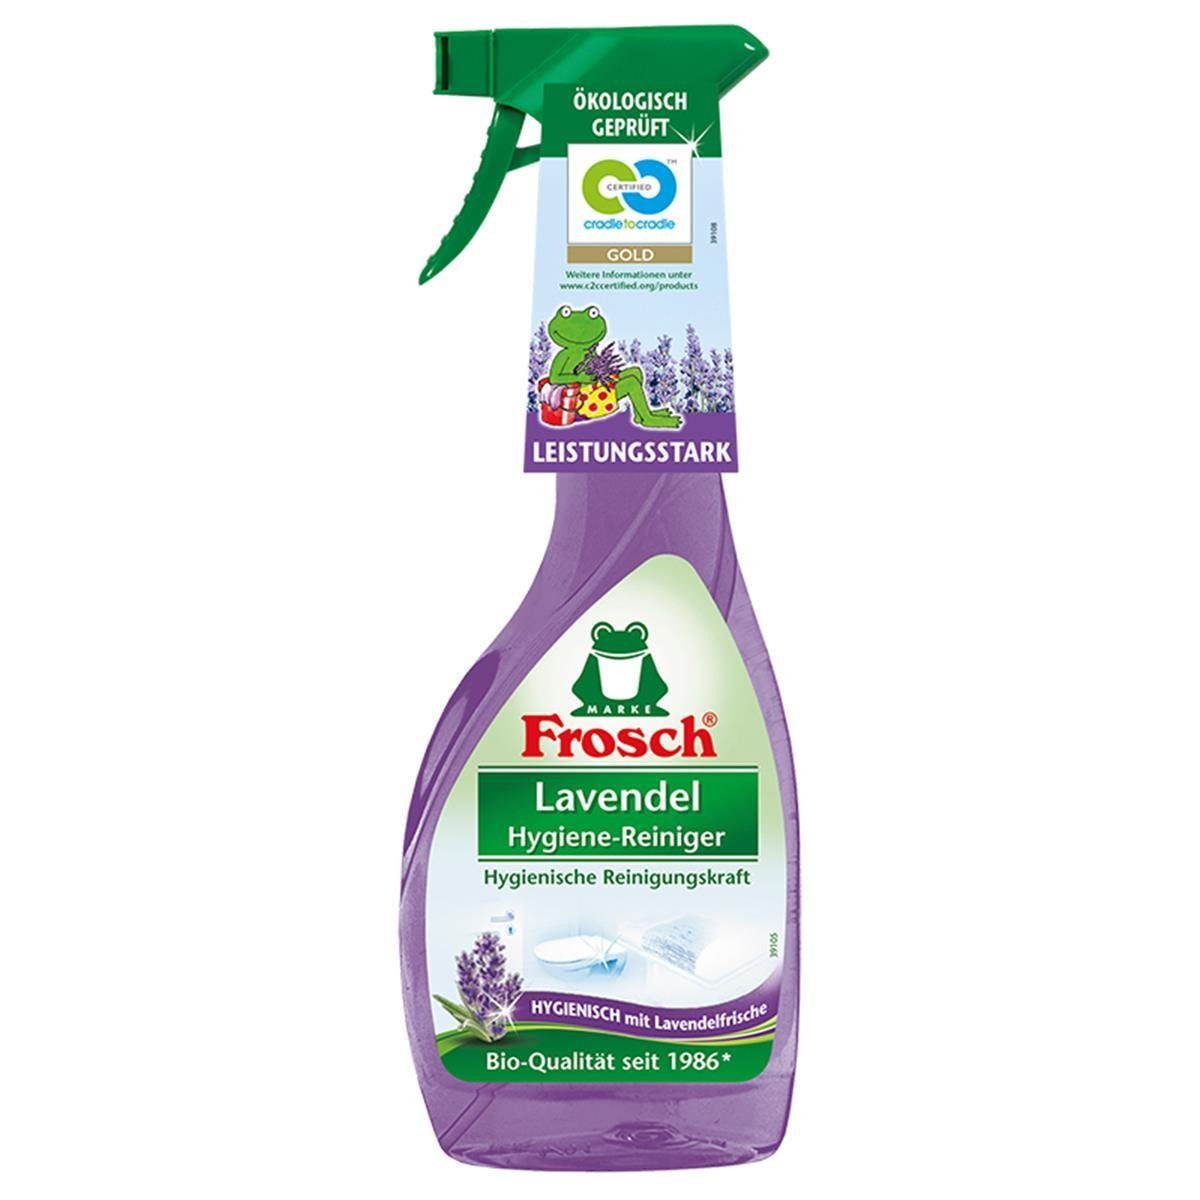 Lavendel ml FROSCH Sprühflasche 500 Hygiene-Reiniger Frosch Spezialwaschmittel